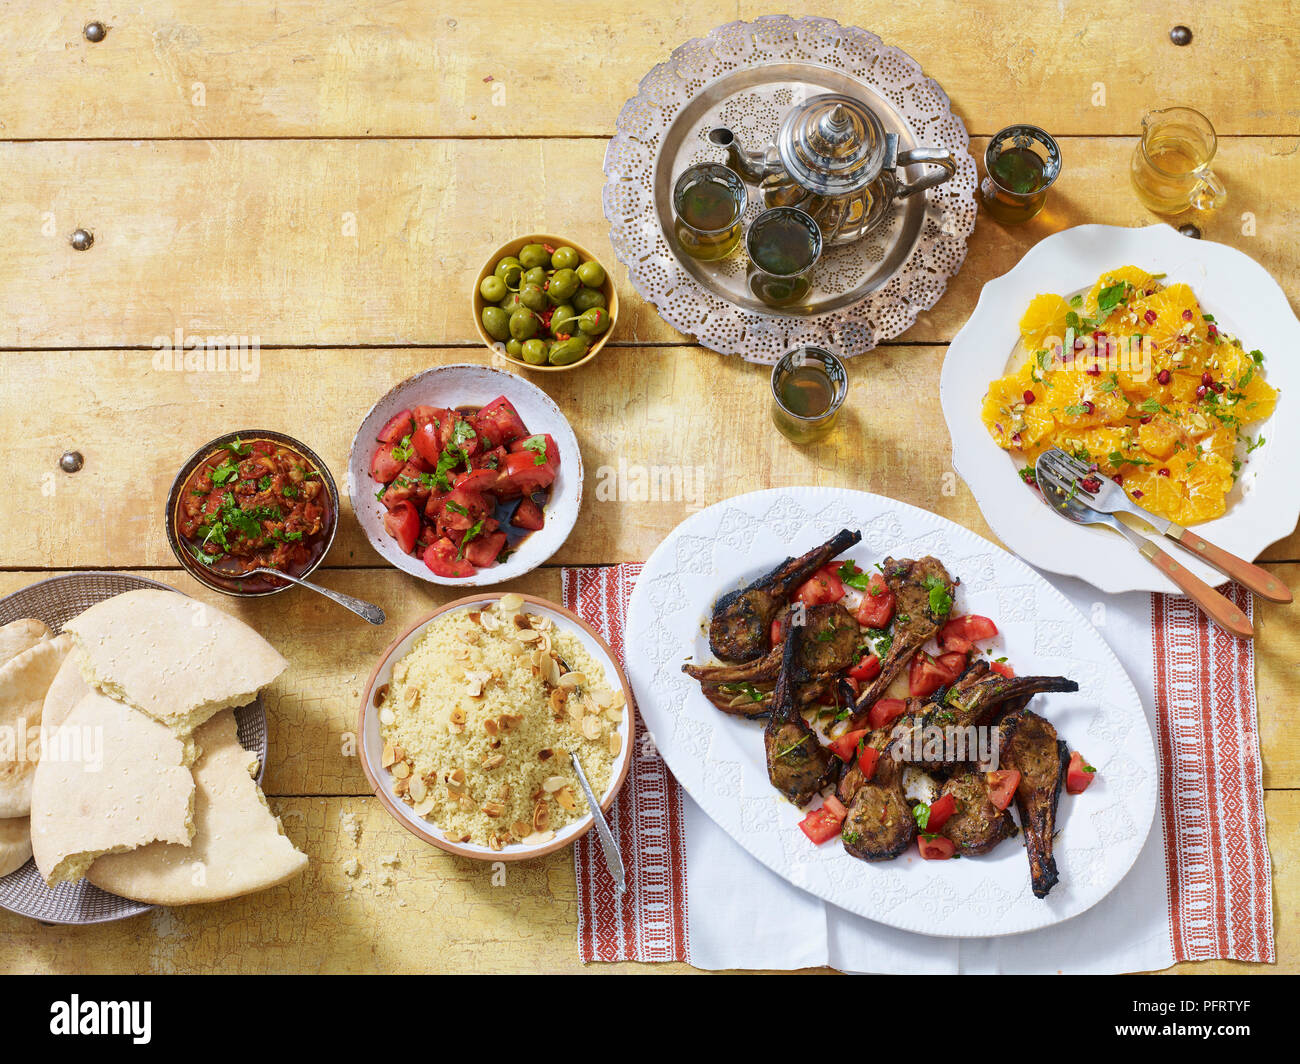 Dîner marocain, y compris l'zahlouk (aubergine dip), kesra (pain), kesksou (couscous), lahma meshwi (agneau), les olives, le thé à la menthe, salade d'oranges a la marocaine Banque D'Images